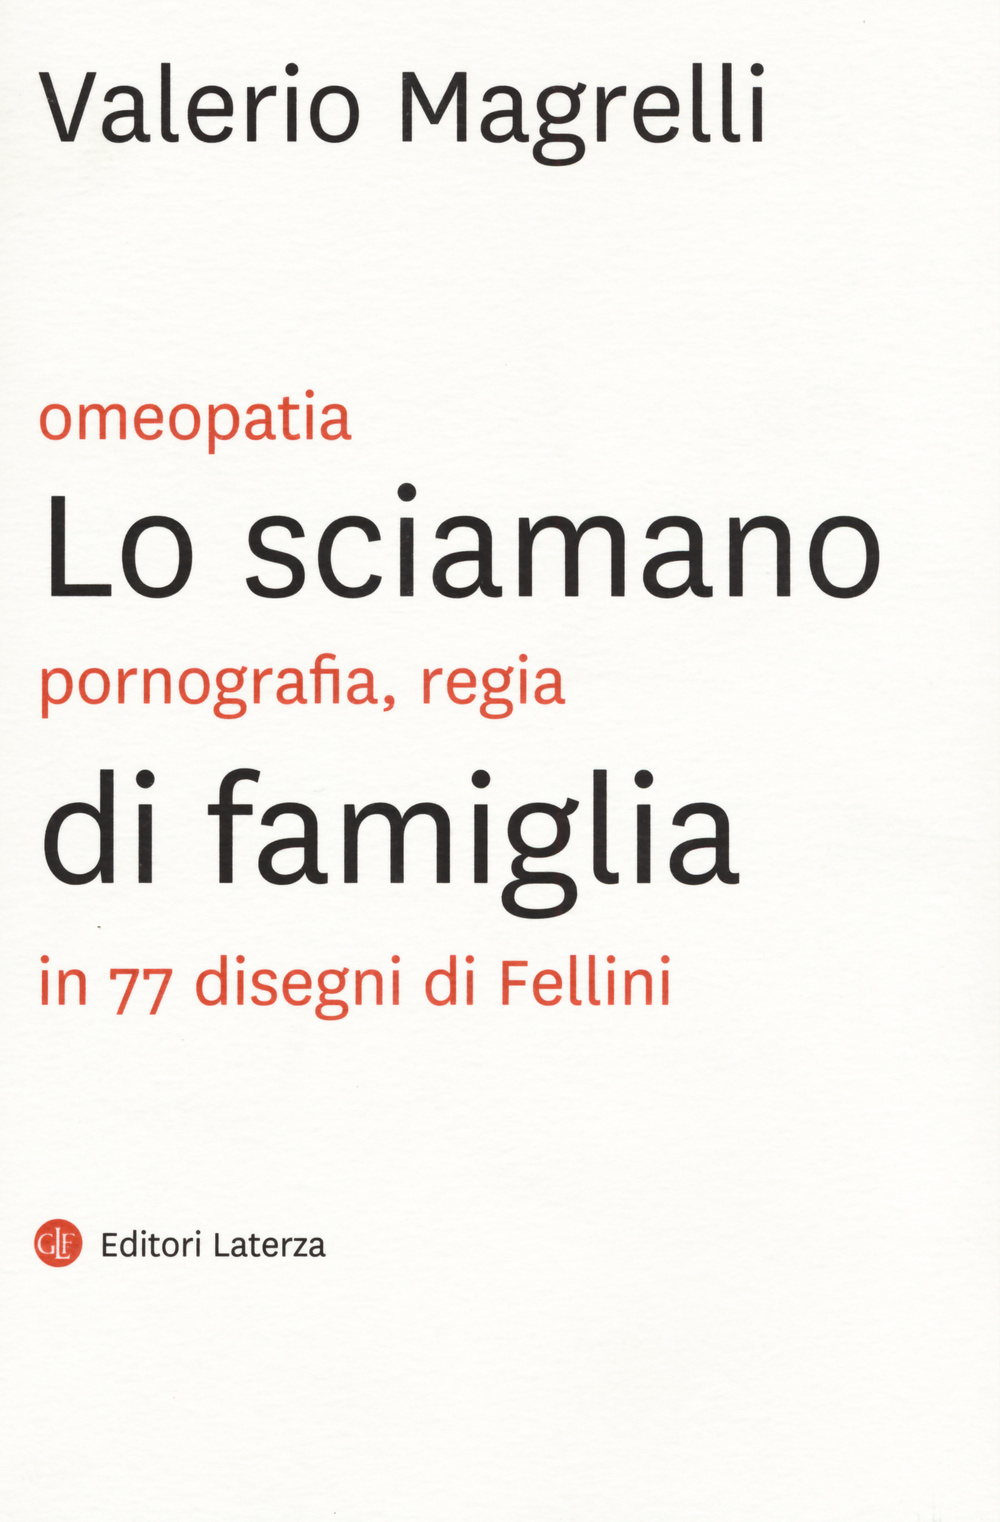 Libri Valerio Magrelli - Lo Sciamano Di Famiglia. Omeopatia, Pornogragfia, Regia In 77 Disegni Di Fellini. Ediz. Illustrata NUOVO SIGILLATO, EDIZIONE DEL 08/10/2015 SUBITO DISPONIBILE